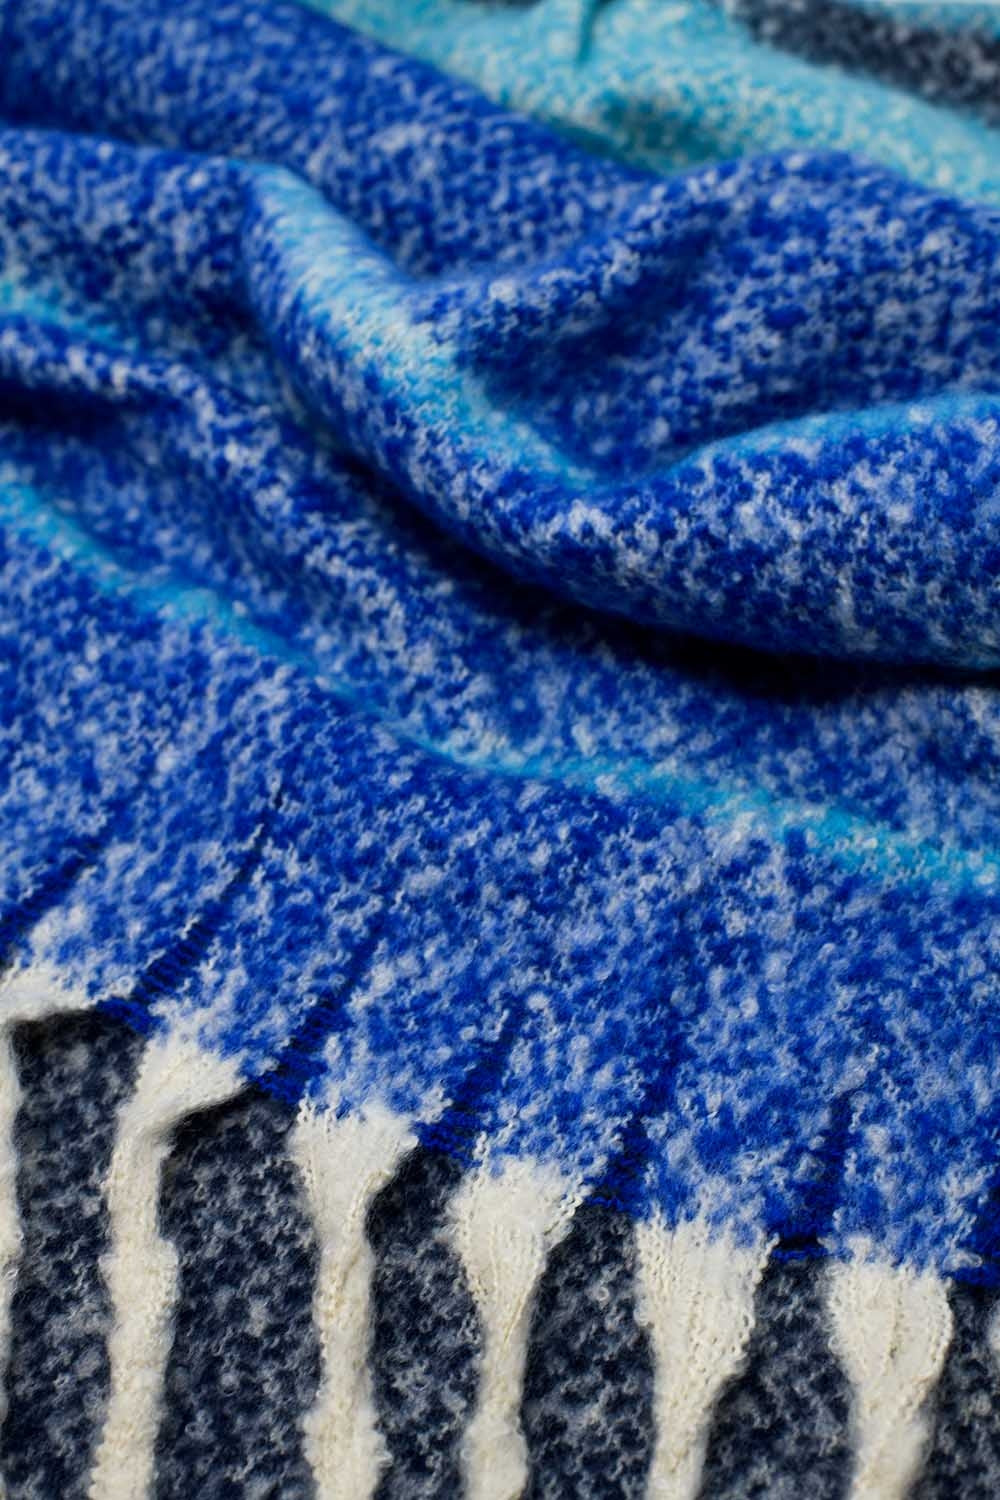 Warme sjaal met strepen in het blauw